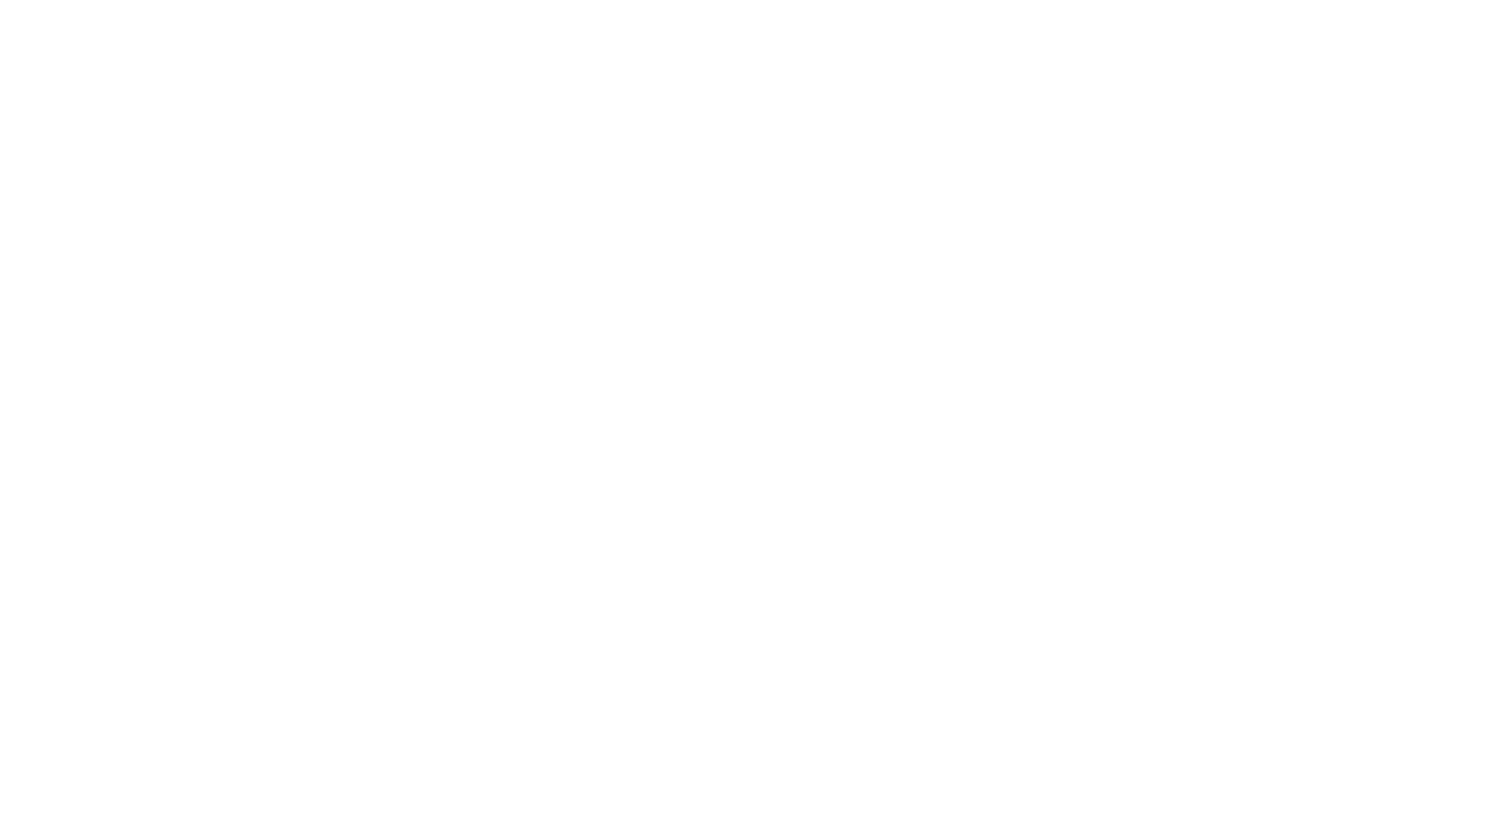 Hello Retail